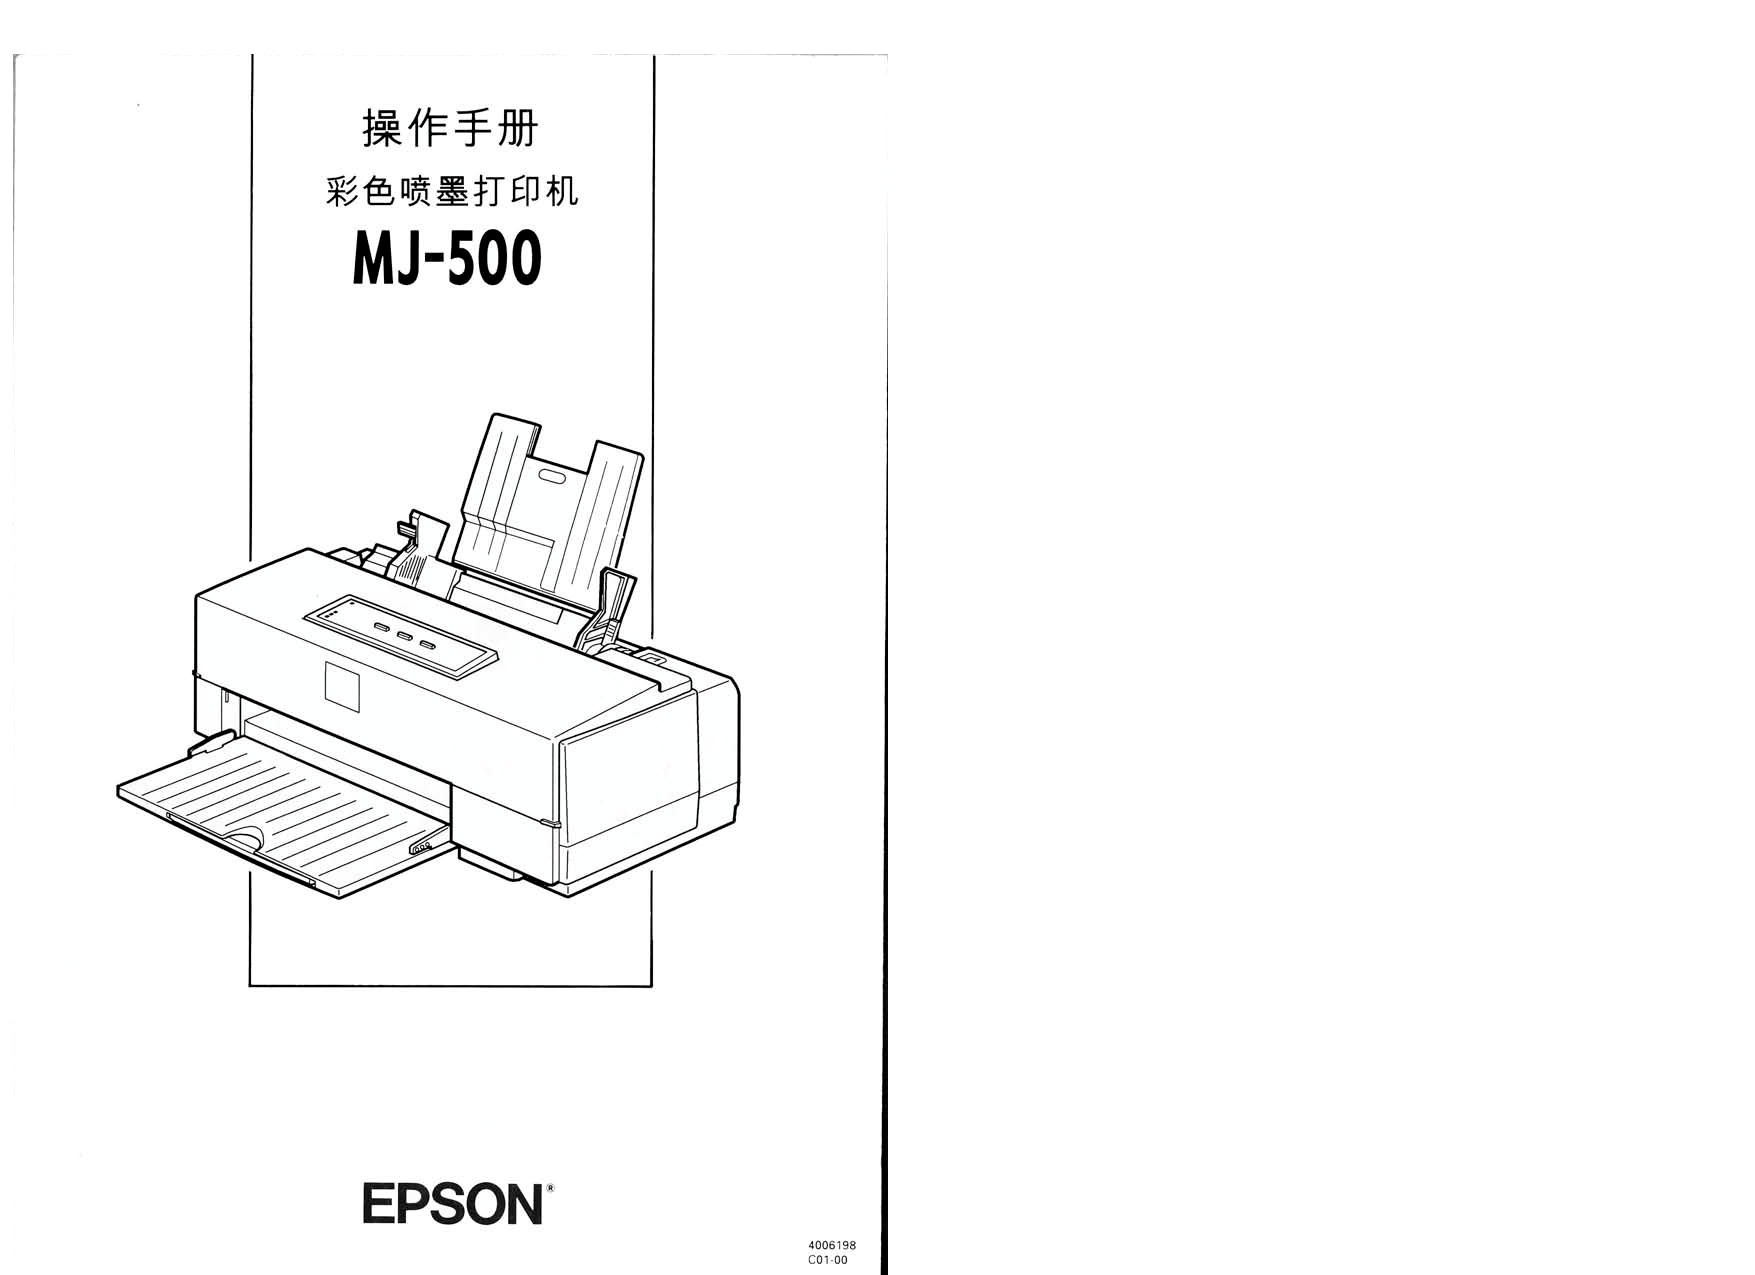 爱普生 Epson MJ-500 操作手册 封面